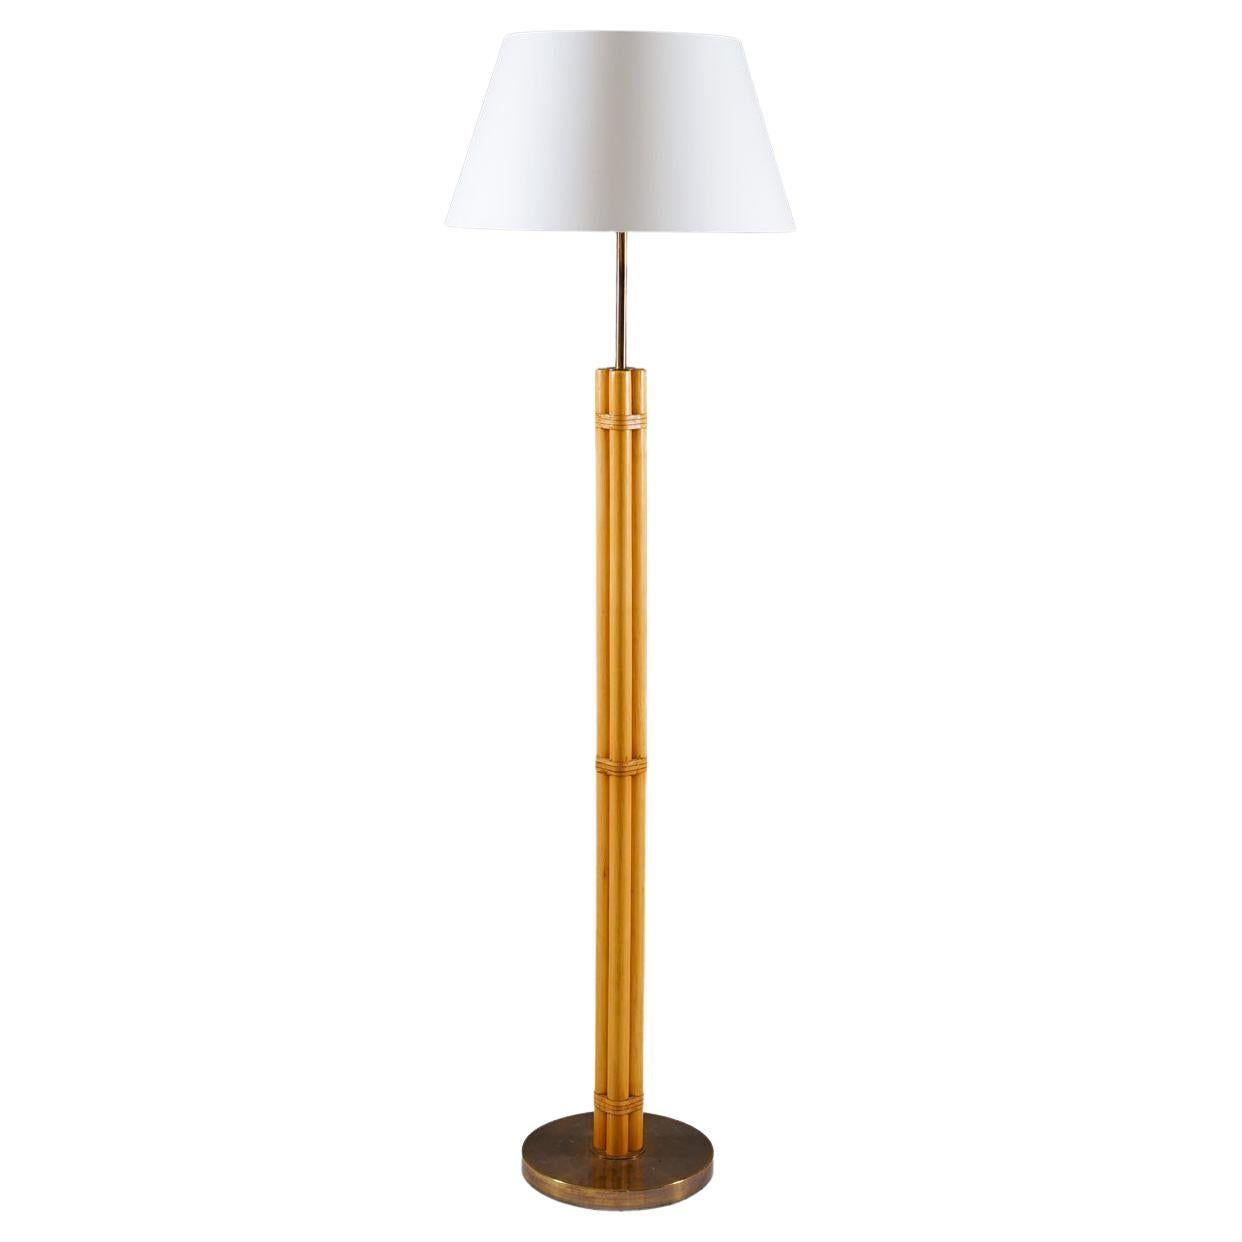 Scandinavian Midcentury Floor Lamp in Brass and Bamboo by Bergboms, Sweden